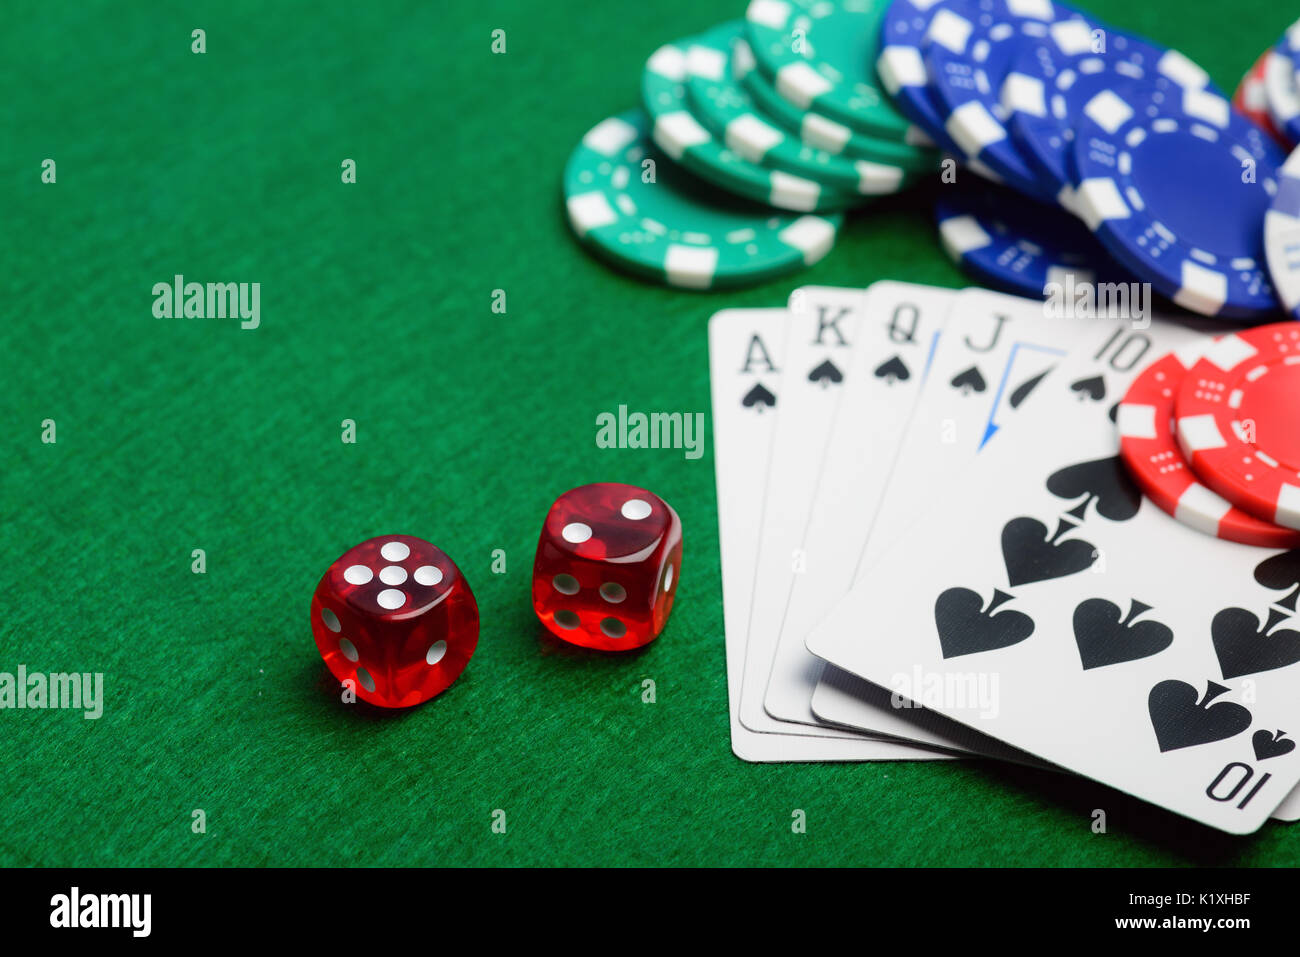 Casino grünen Tisch mit Chips, Geld, spielen Karten und Würfel. Poker spiel Konzept Stockfoto